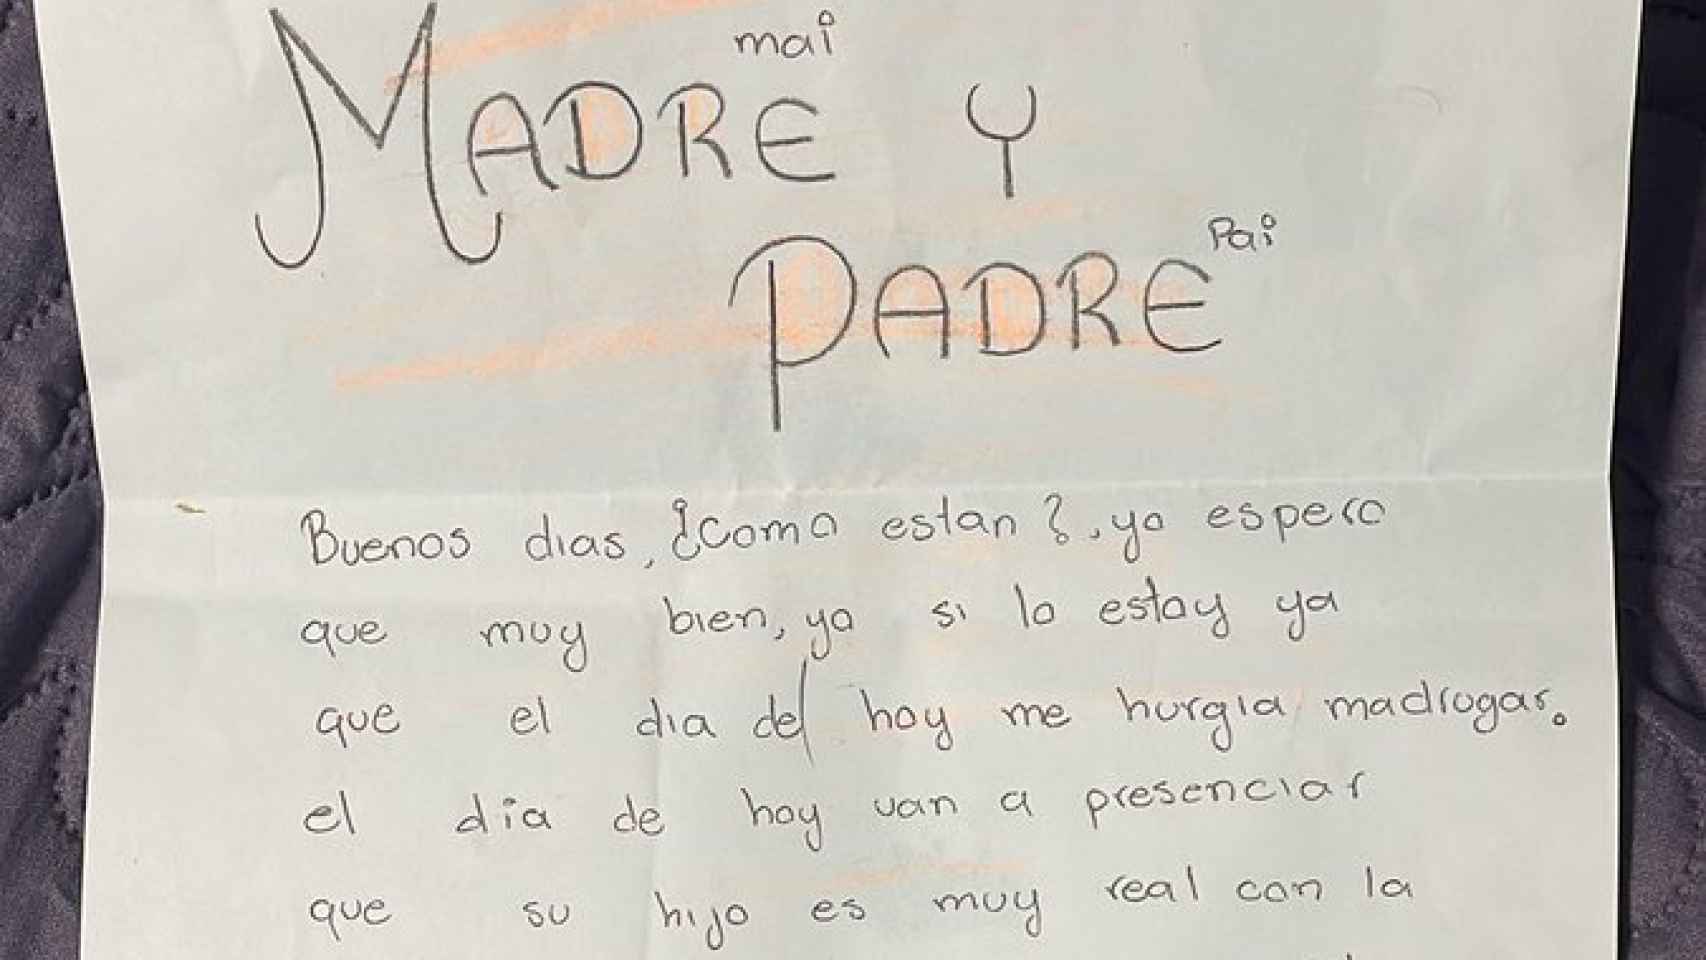 La emotiva carta de un niño a sus padres por sus notas: 